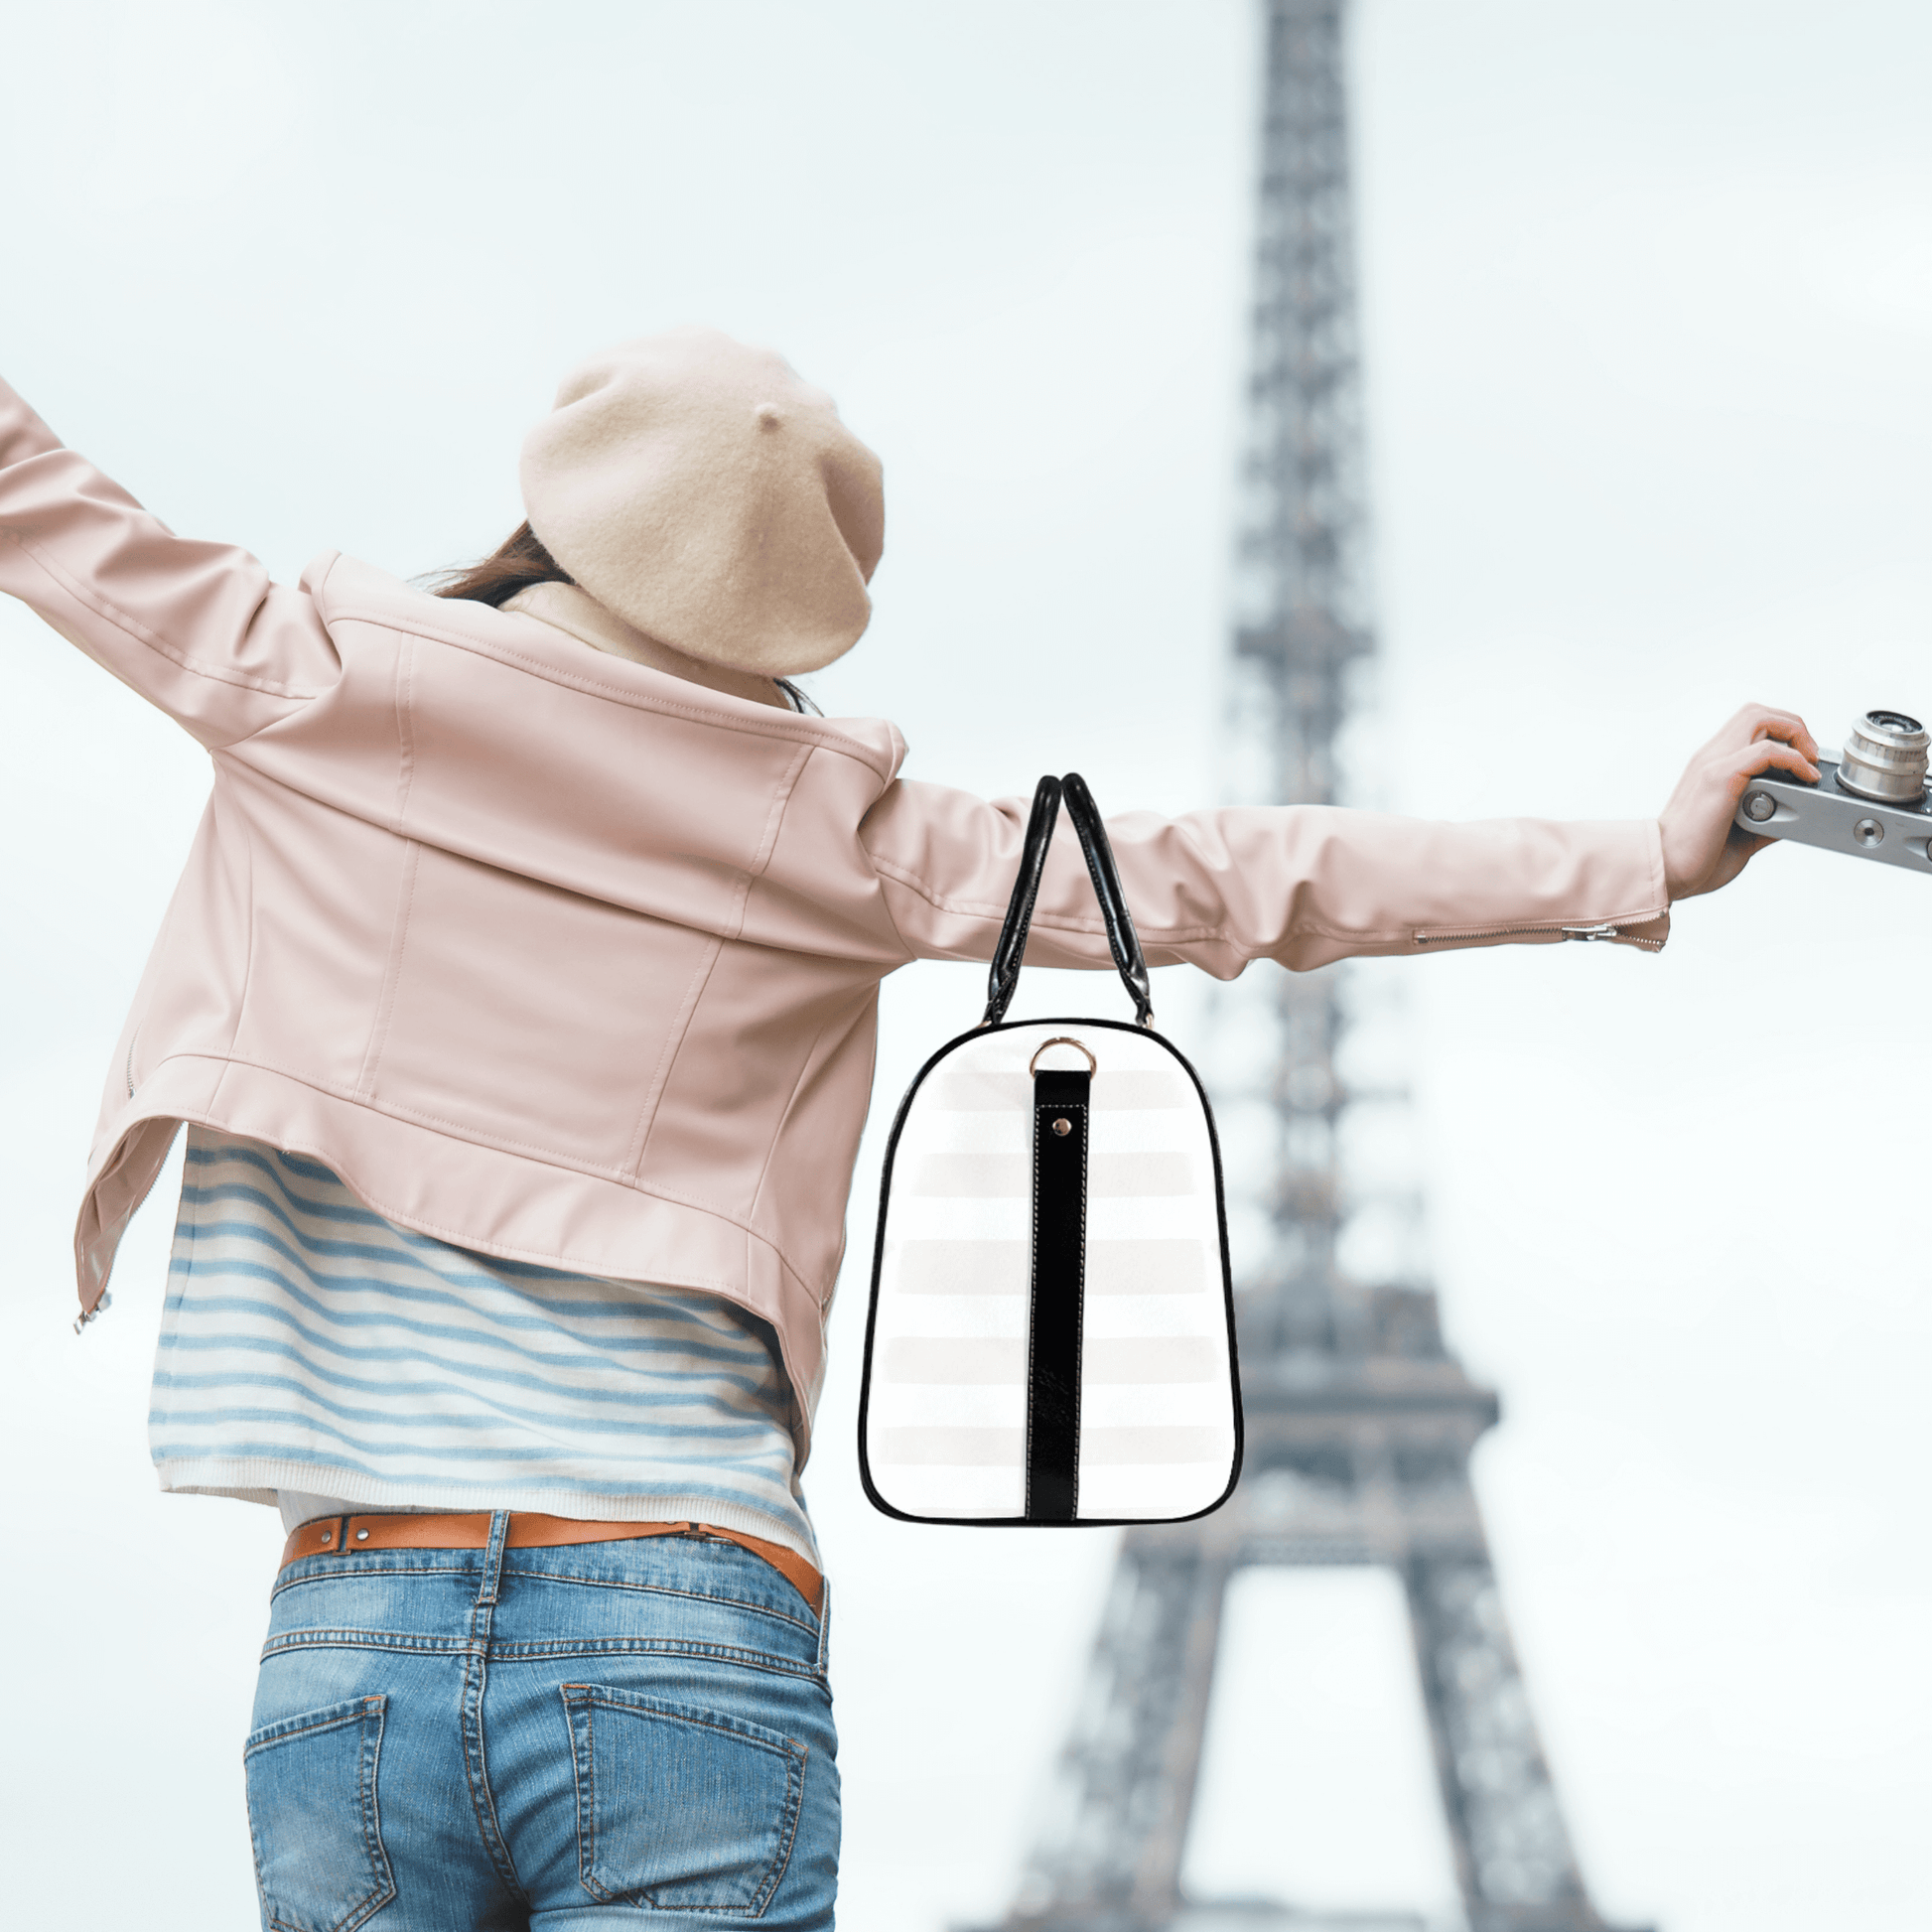 Our model is in Paris with her elegant weekender bag.